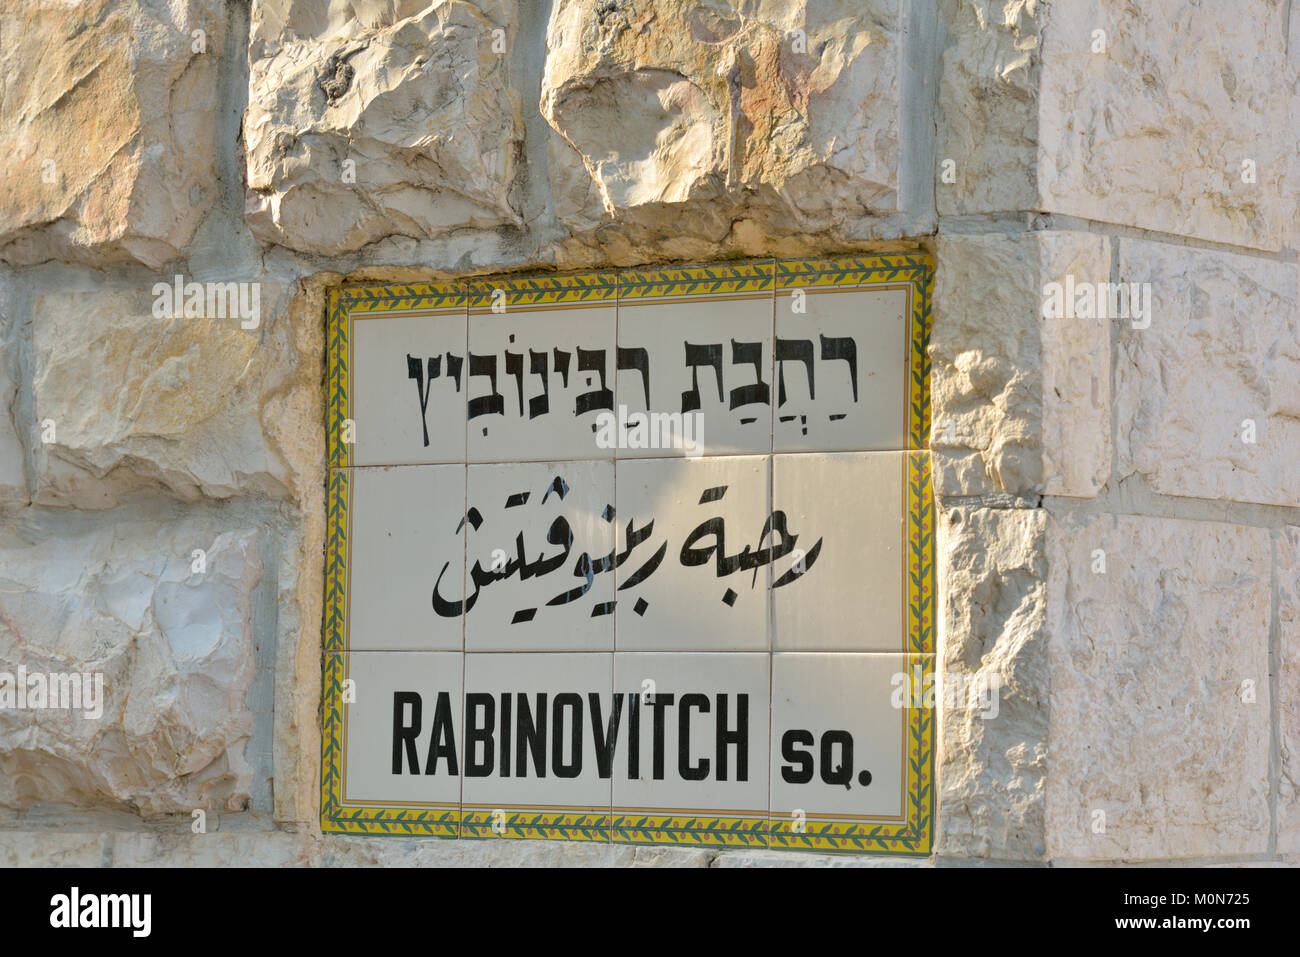 Jérusalem, Israël - 20 mars 2014 : plaque de rue de la place, nommé d'après Vadim Rabinovitch pour sa contribution à la communauté juive de la ville. Banque D'Images